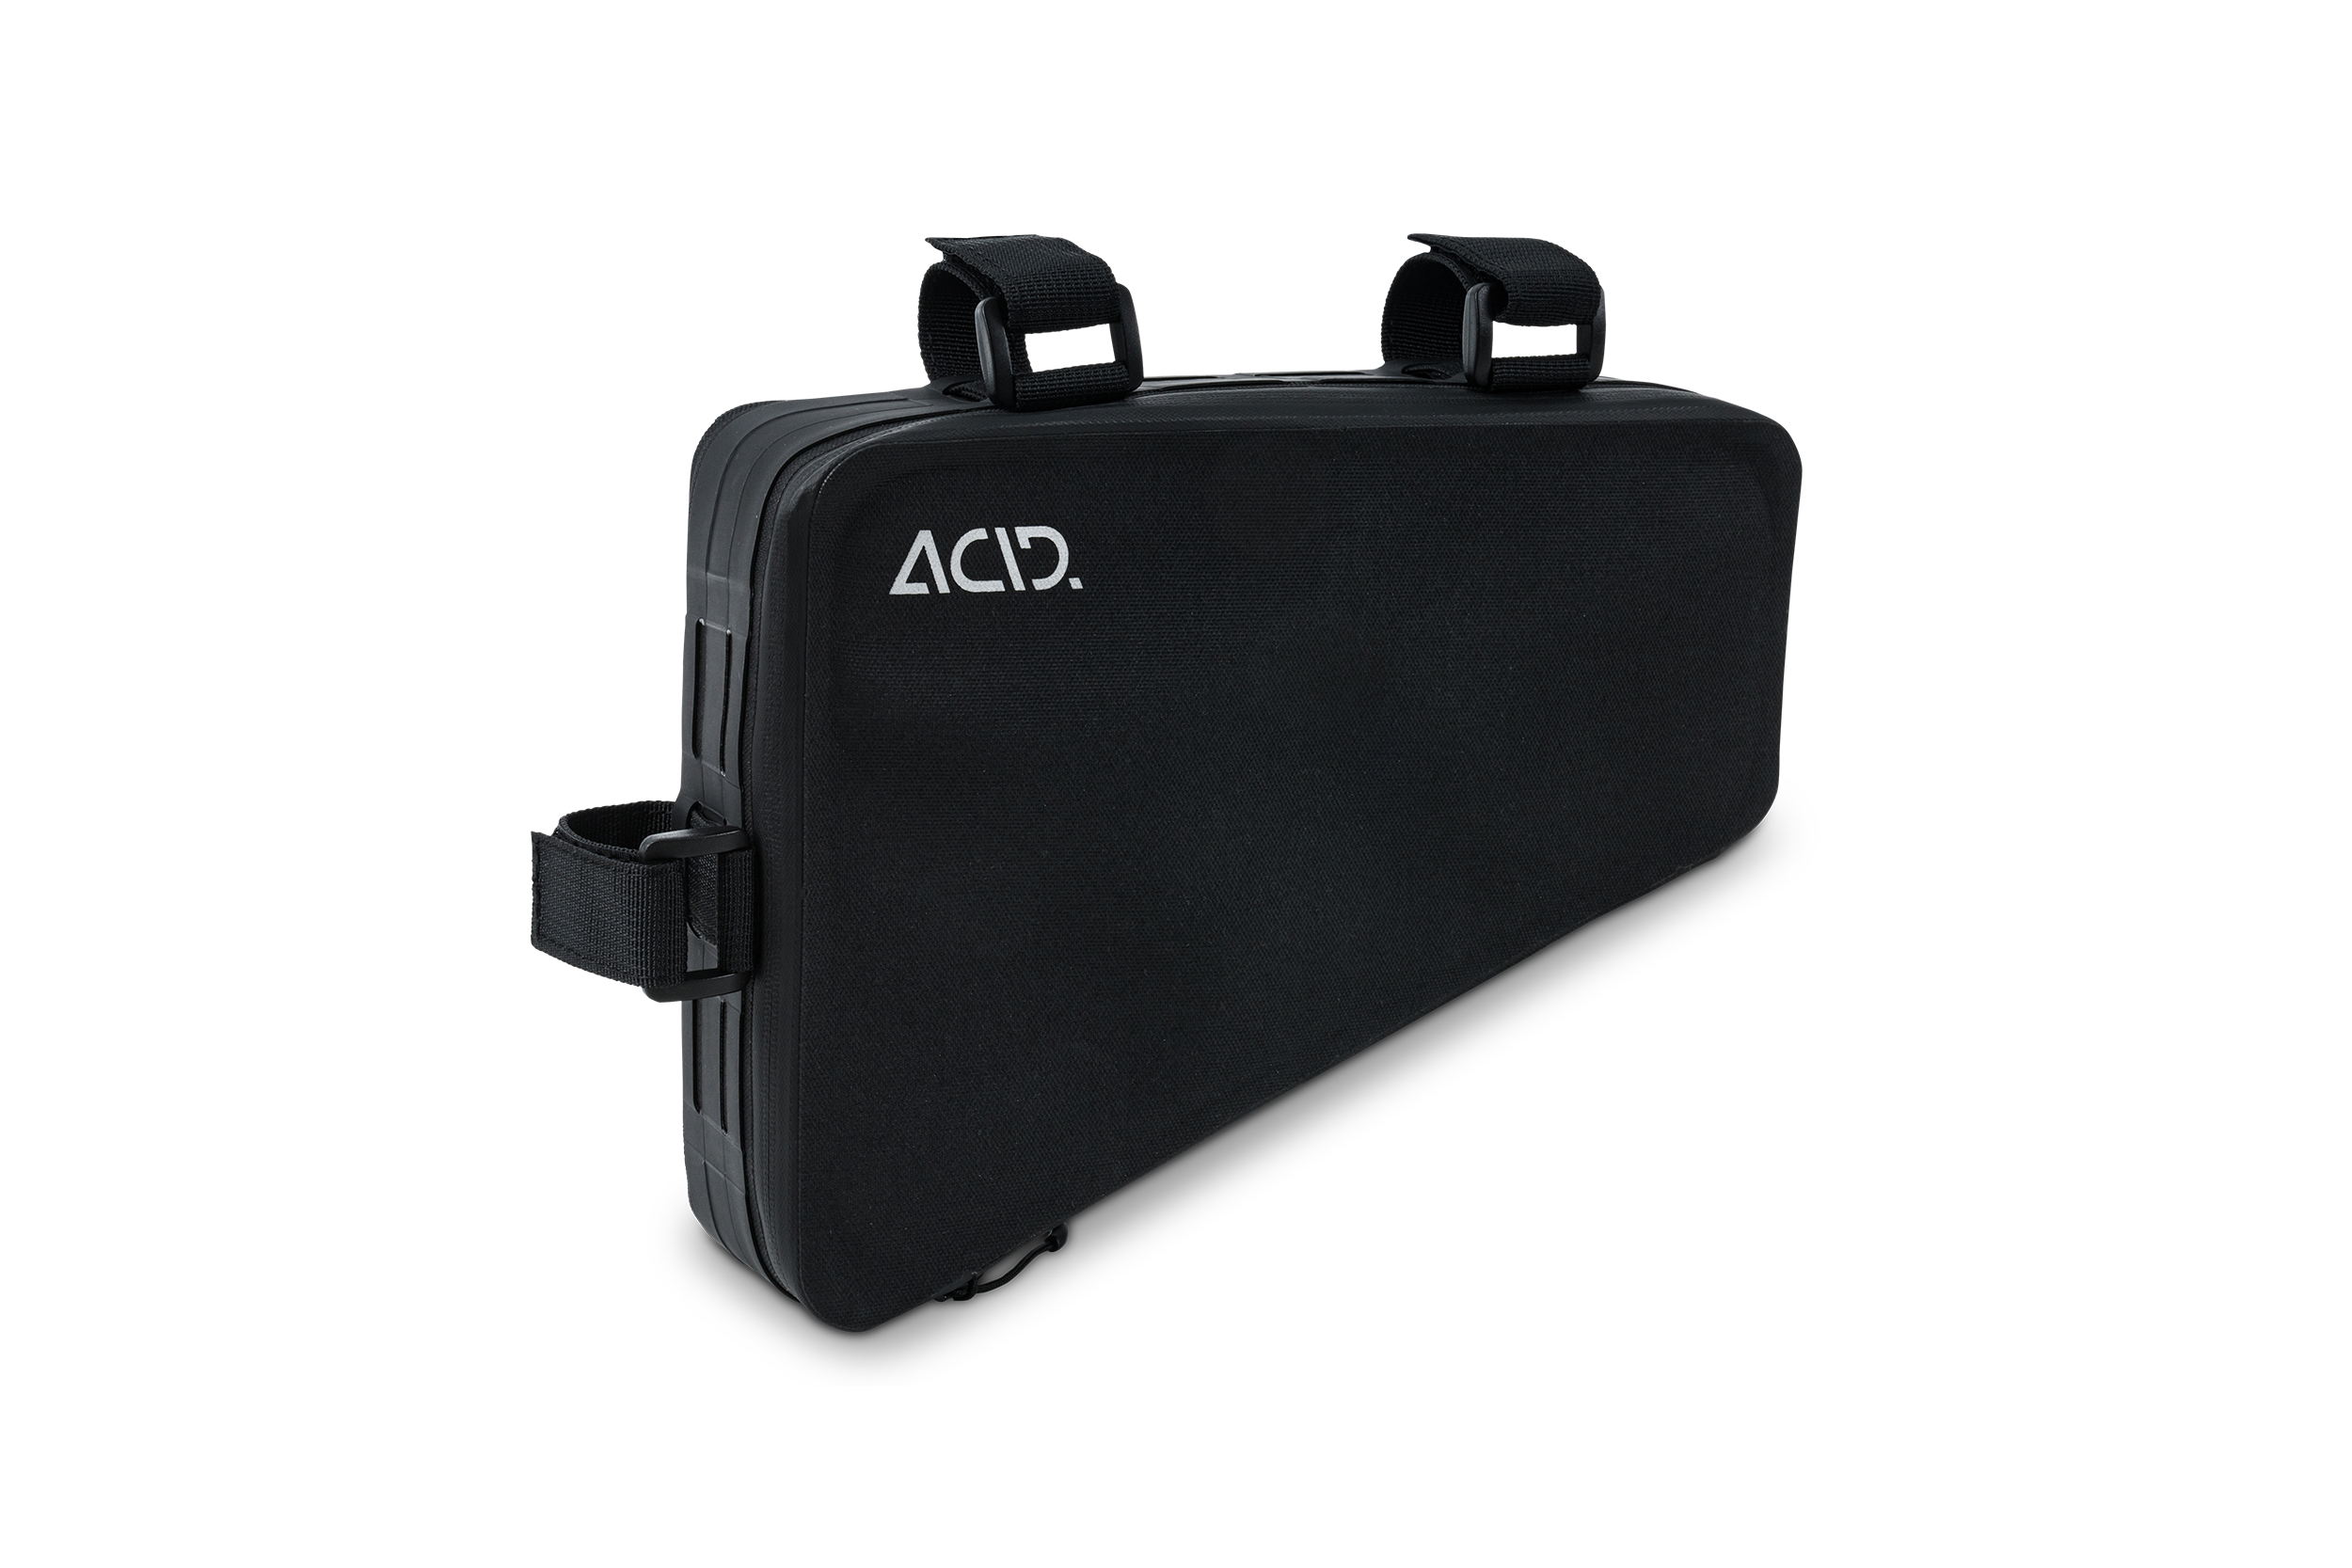 ACID Frame Bag PRO 2